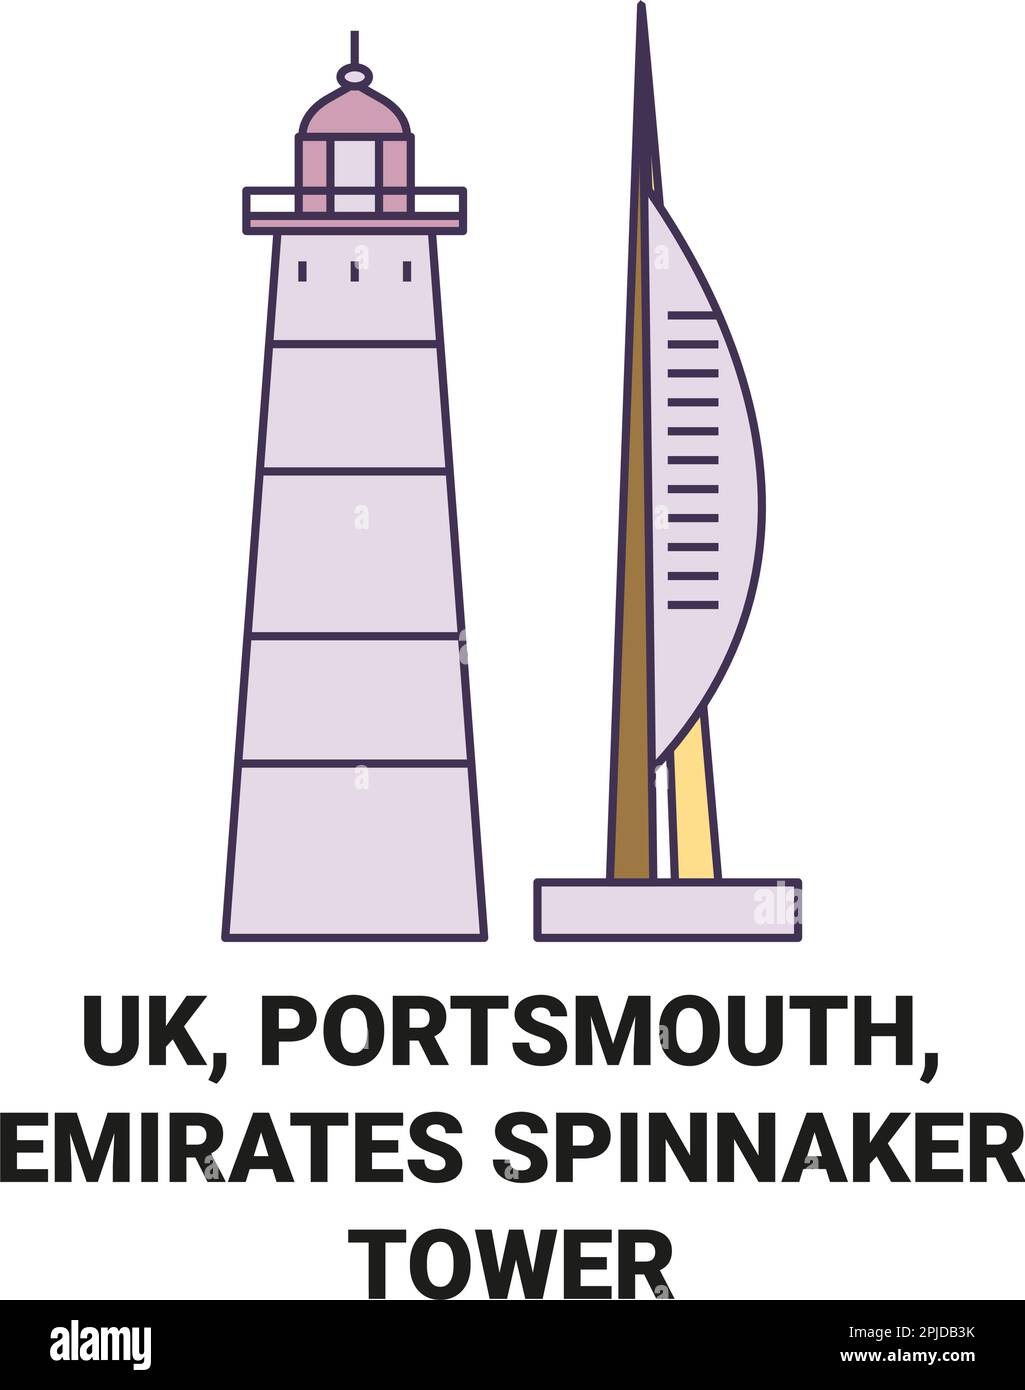 England, Portsmouth, Emirates Spinnaker Tower travel landmark vector illustration Stock Vector